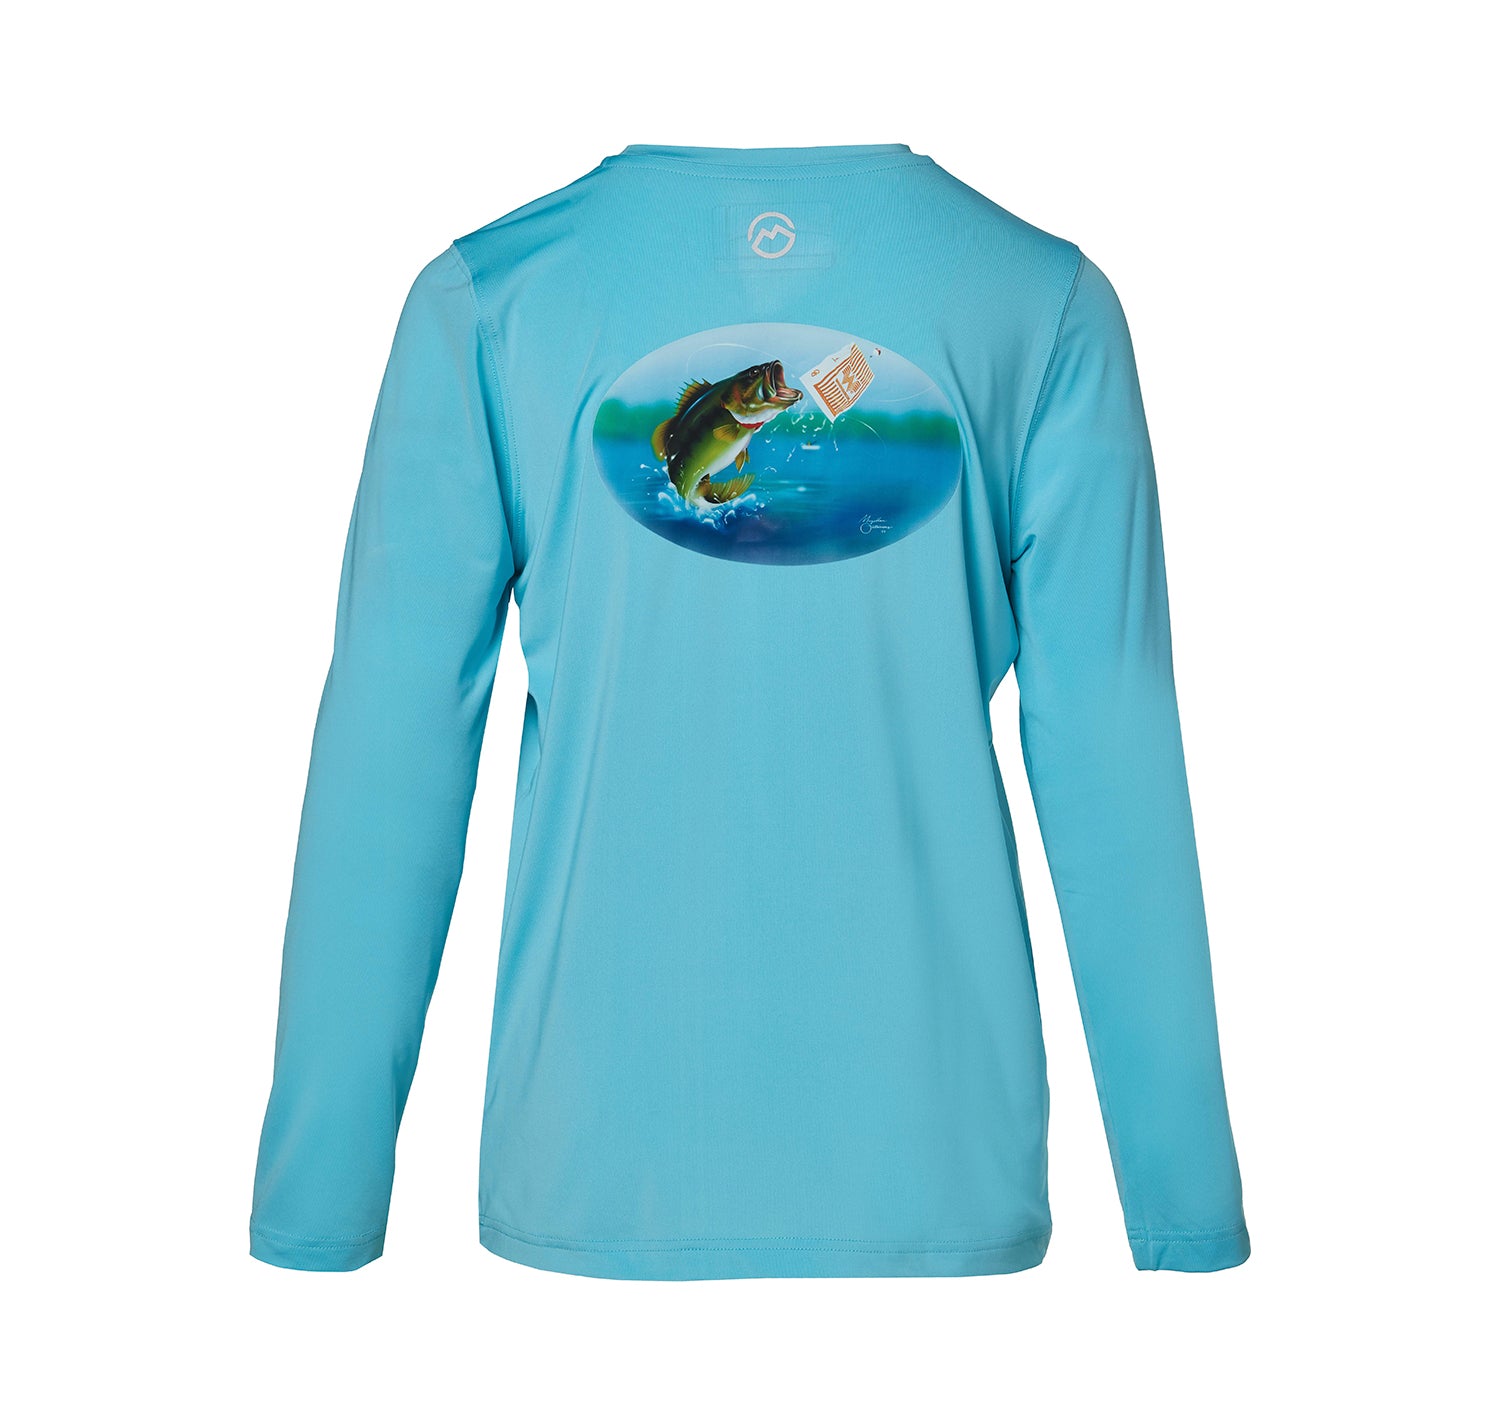 Magellan Long-Sleeve Fishing Shirt  Fishing shirts, Shirts, Shirt shop